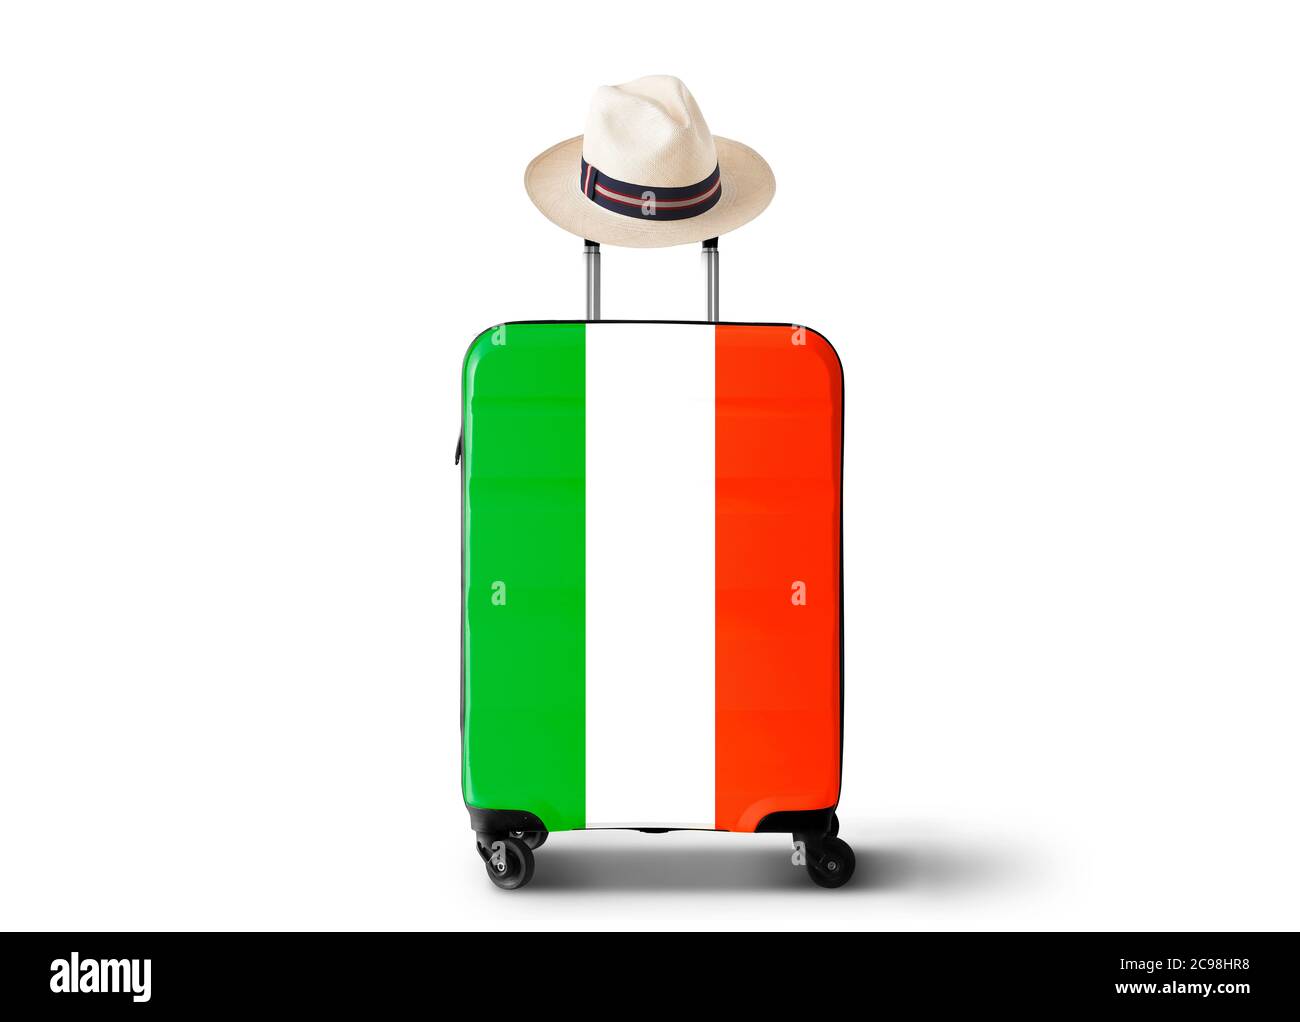 Italie, monuments Italie et valise rétro avec chapeau Banque D'Images